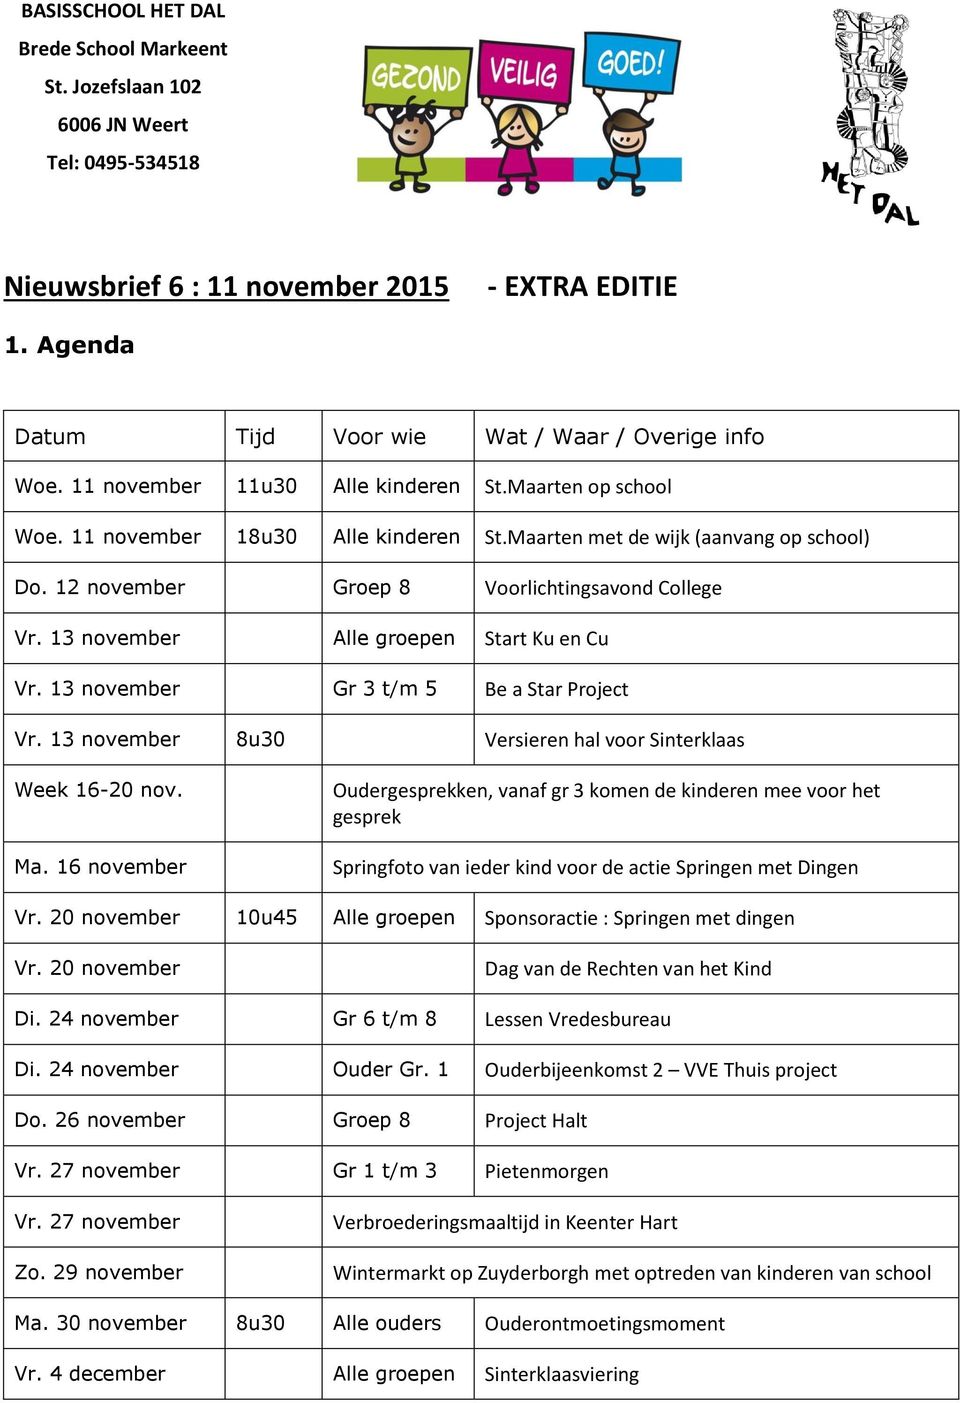 13 november Alle groepen Start Ku en Cu Vr. 13 november Gr 3 t/m 5 Be a Star Project Vr. 13 november 8u30 Versieren hal voor Sinterklaas Week 16-20 nov. Ma.